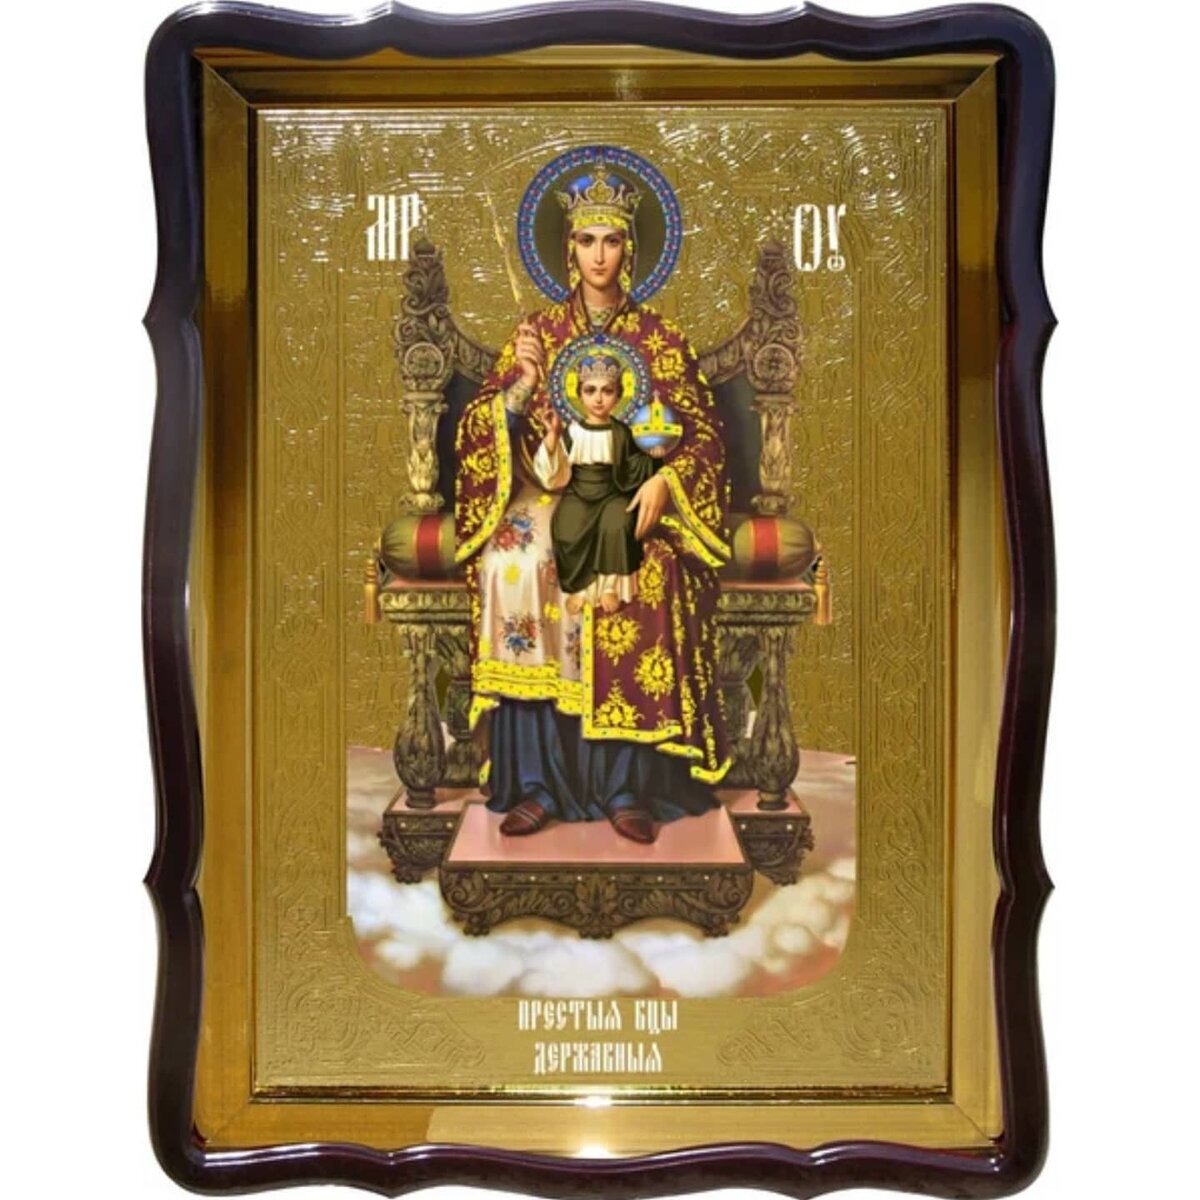 В 1991 году, после 60 лет заточения , в запастниках Исторического музея,православной церкви была возвращена Державная икона Богородицы.